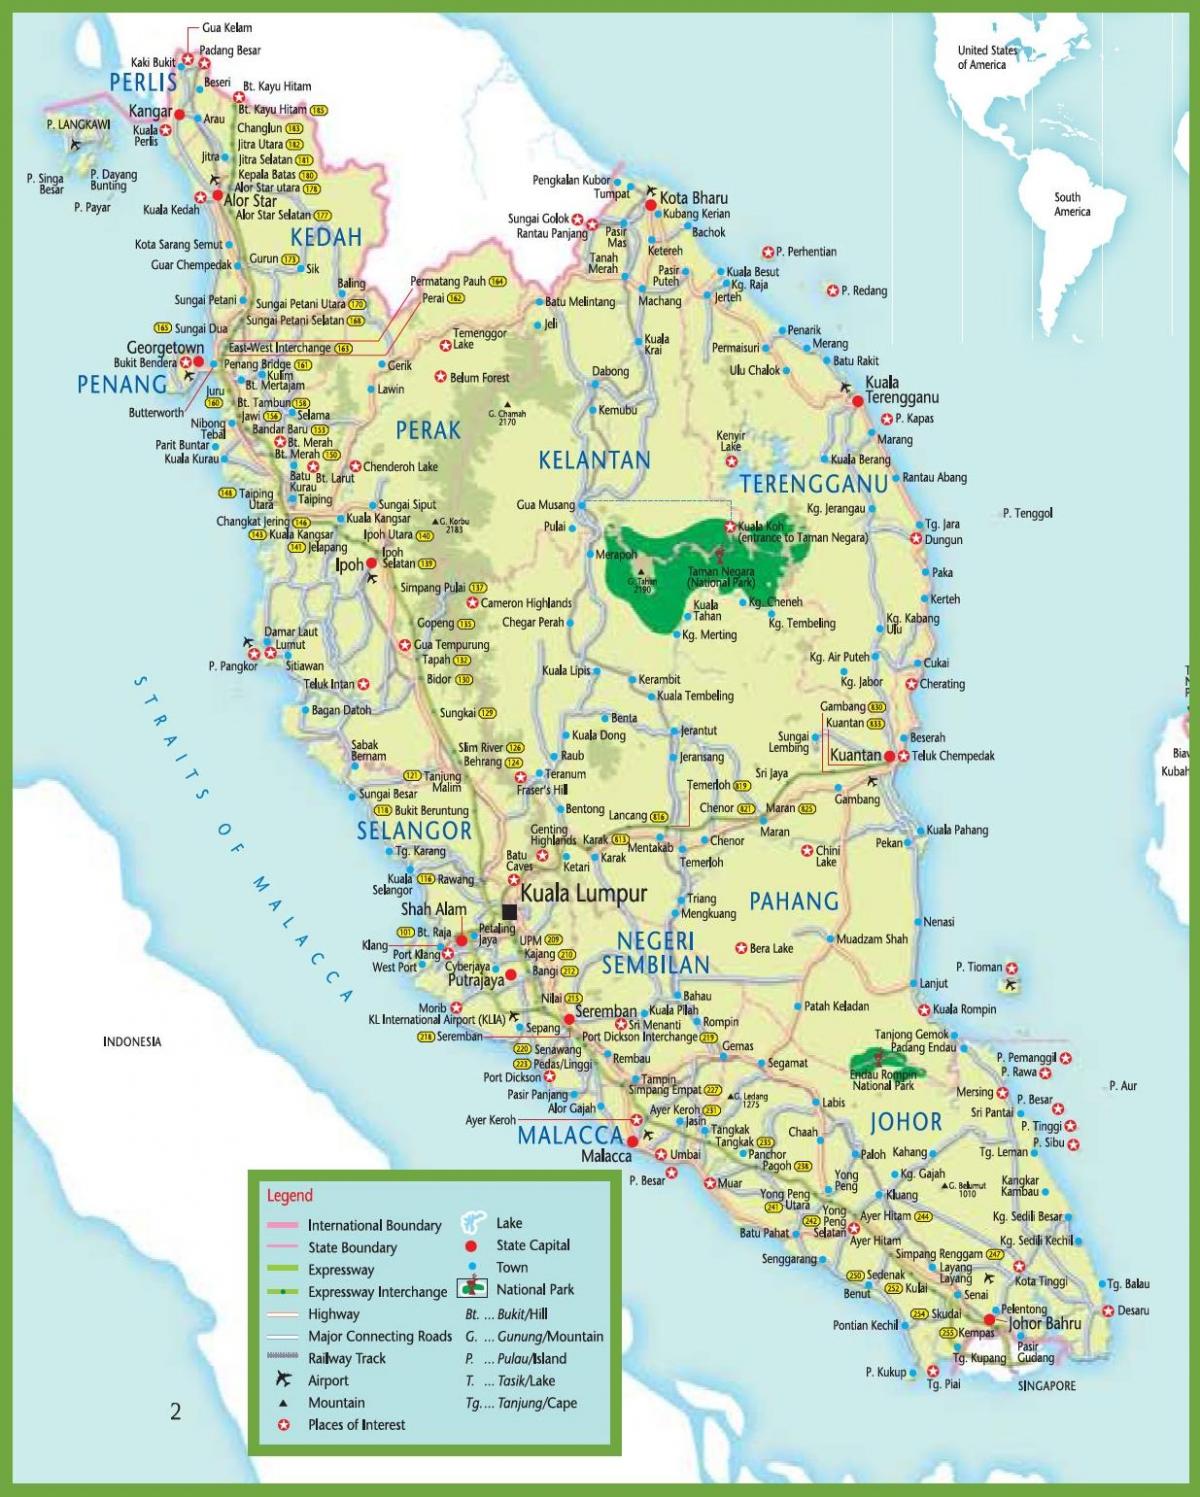 mrt mapu v malajzii